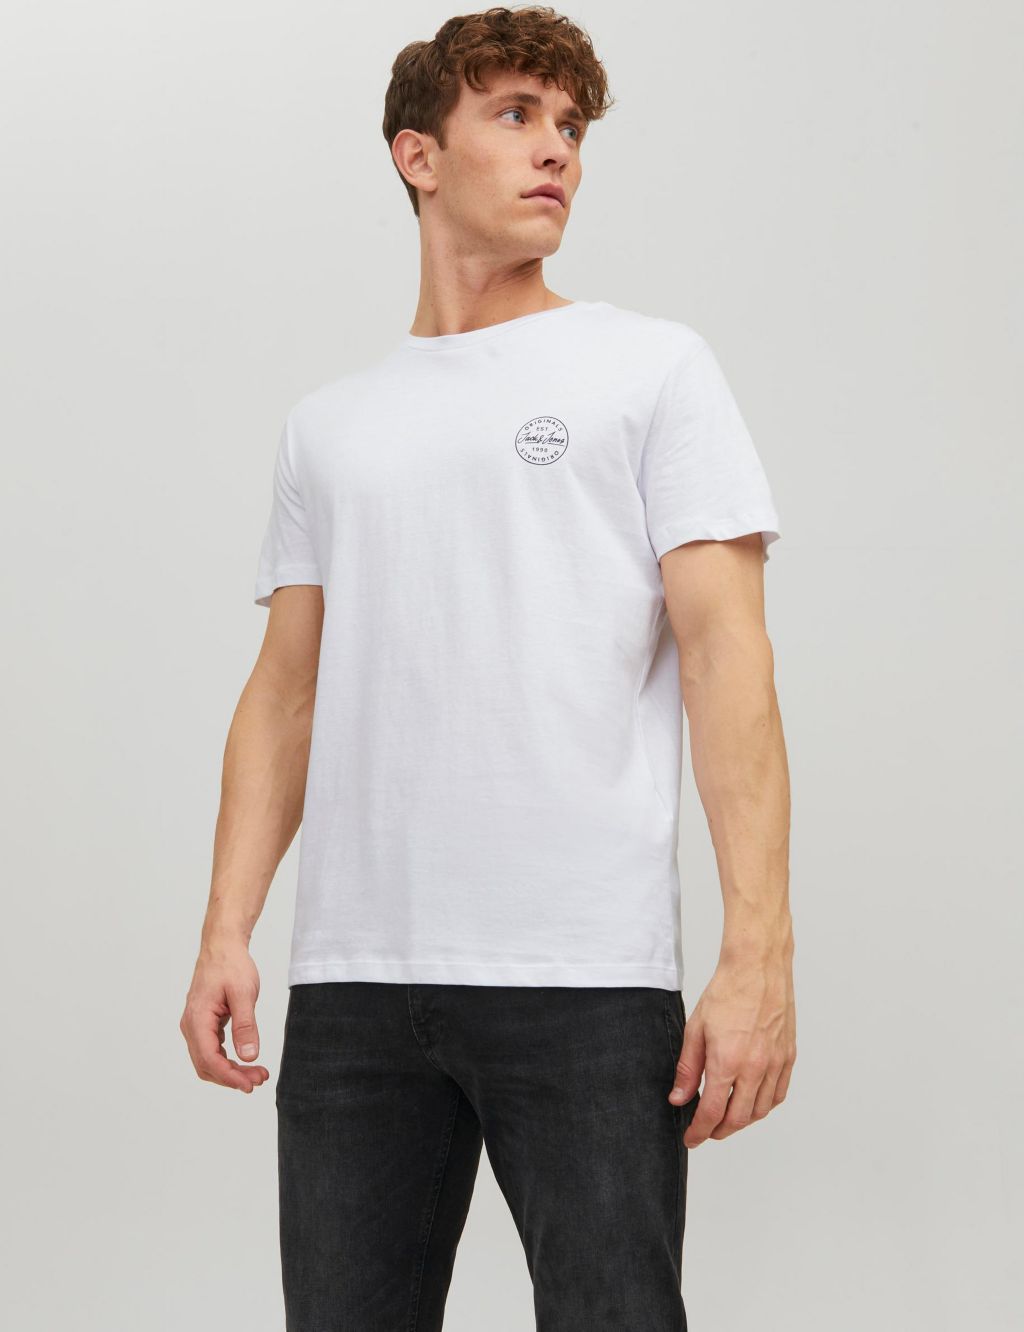 Pure Cotton Crew Neck T-Shirt image 1